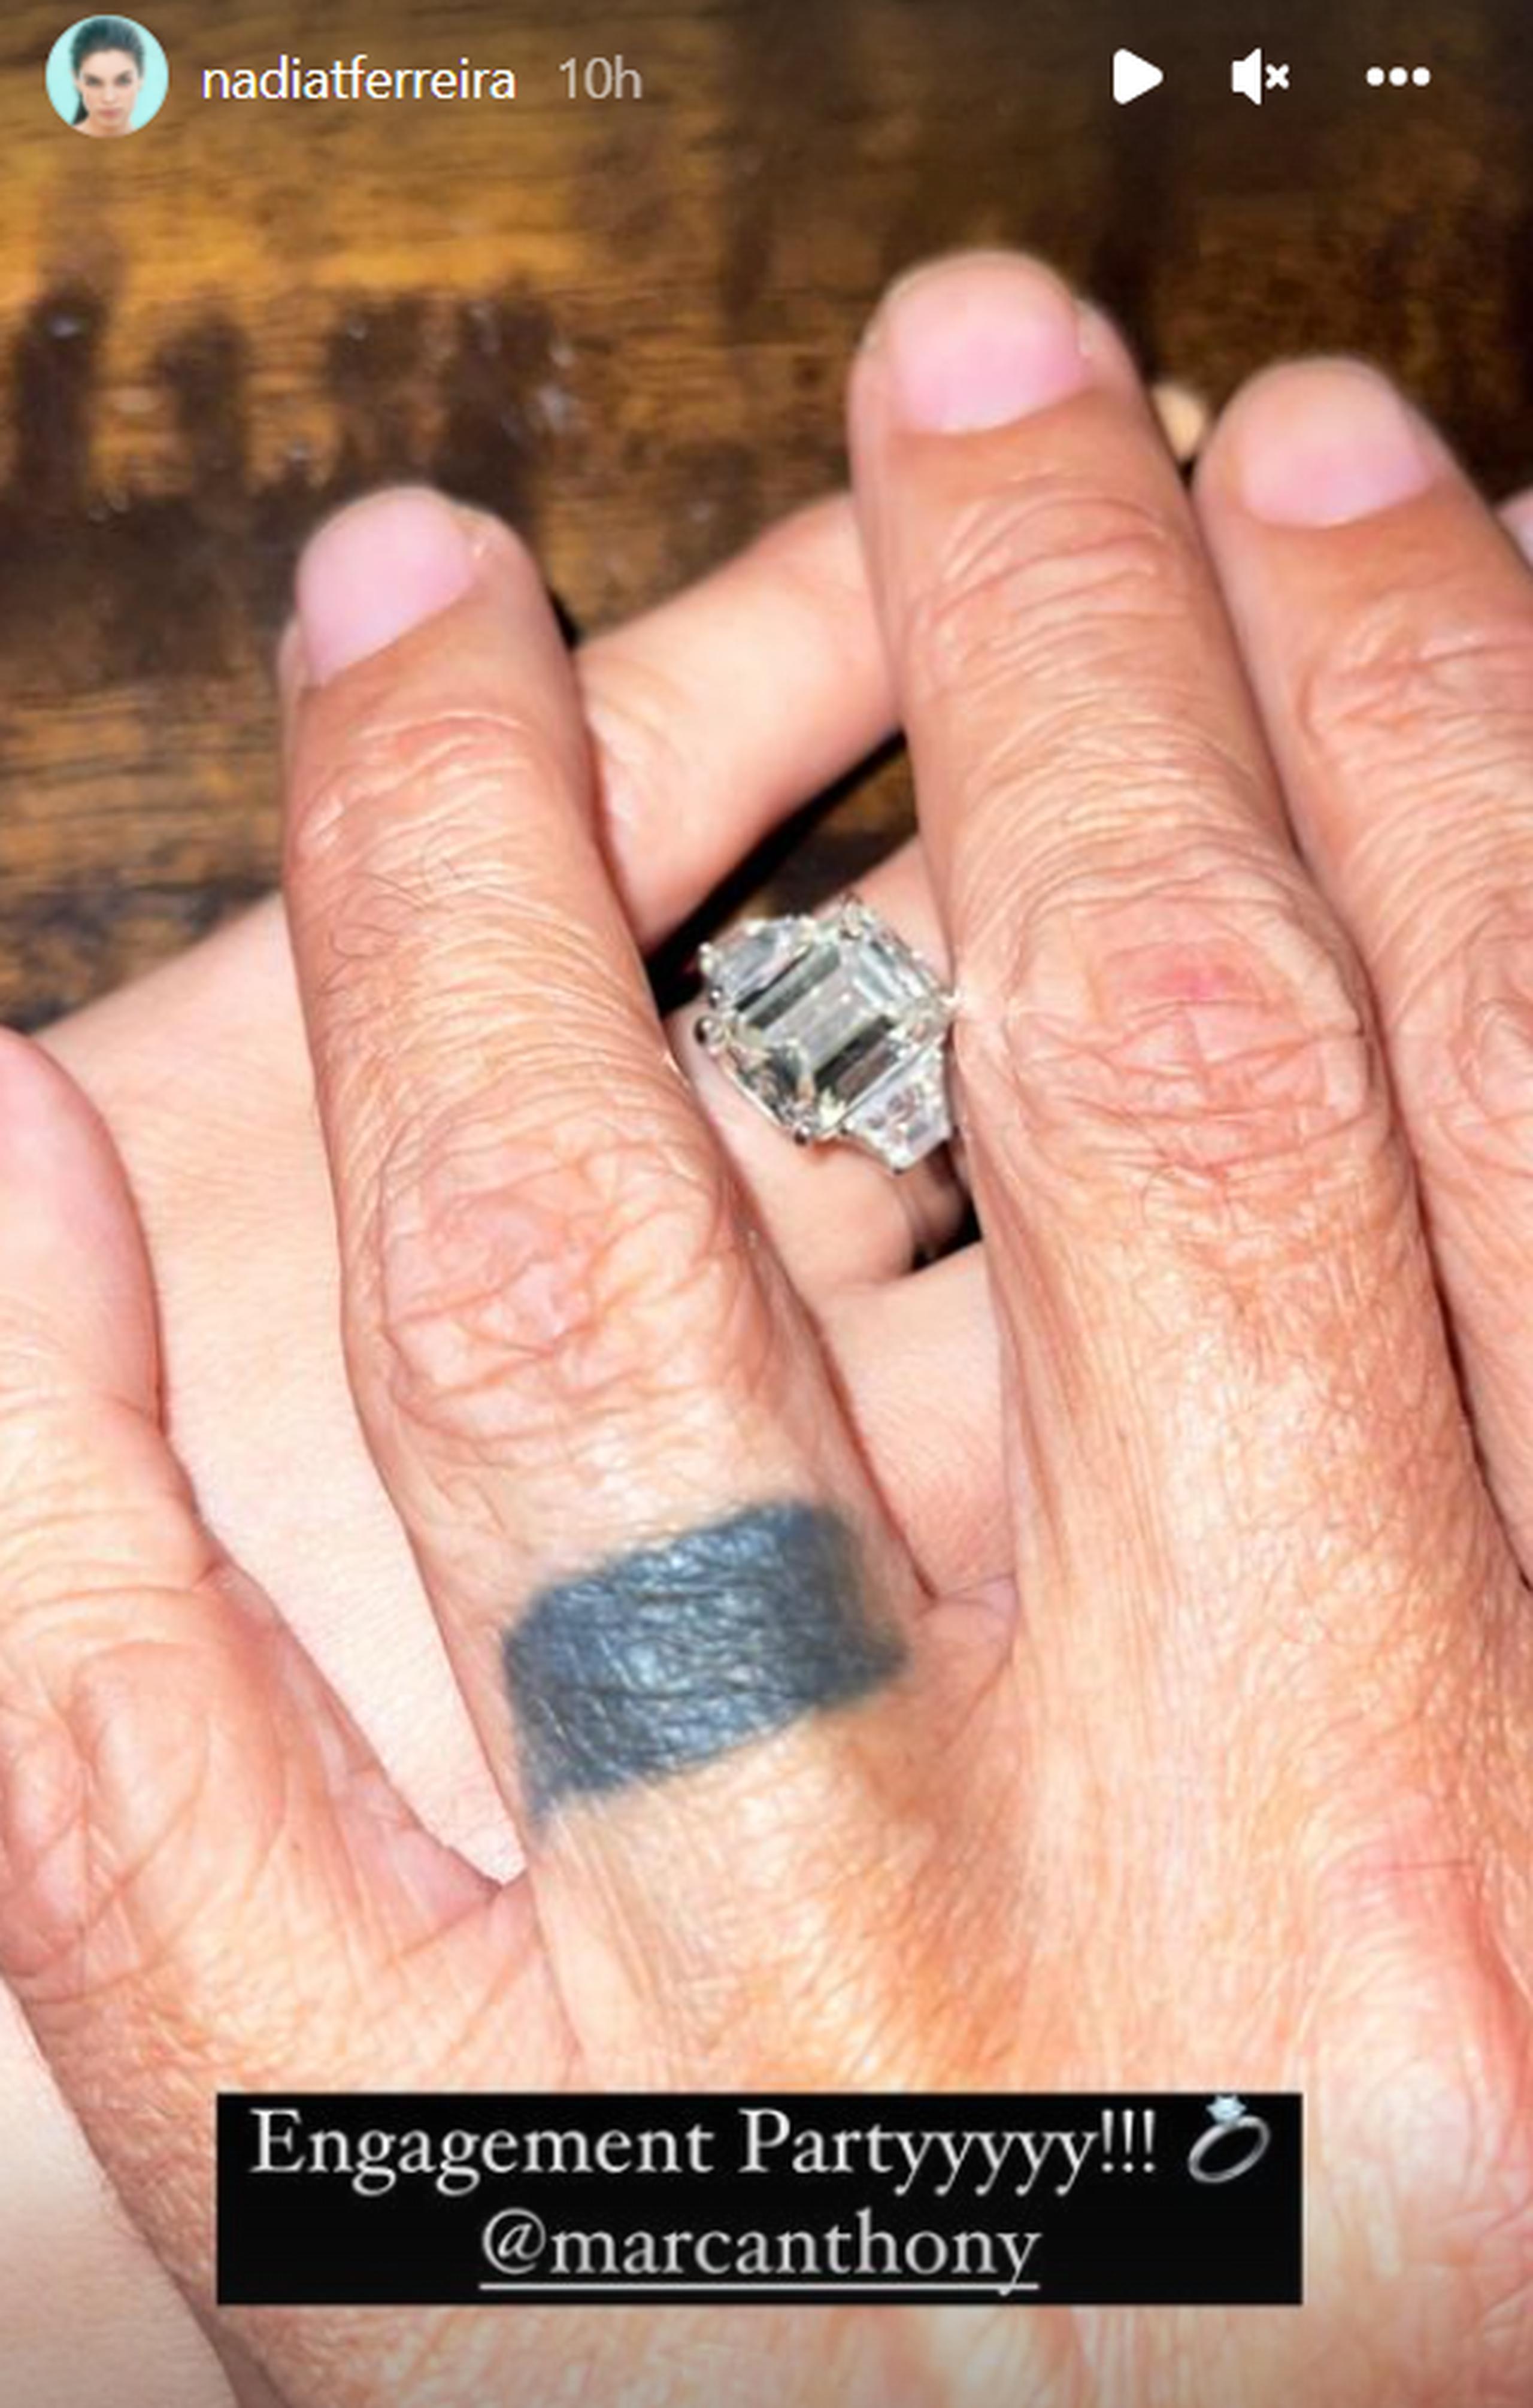 Nadia Ferreira compartió esta foto en la que mostró su anillo de compromiso.